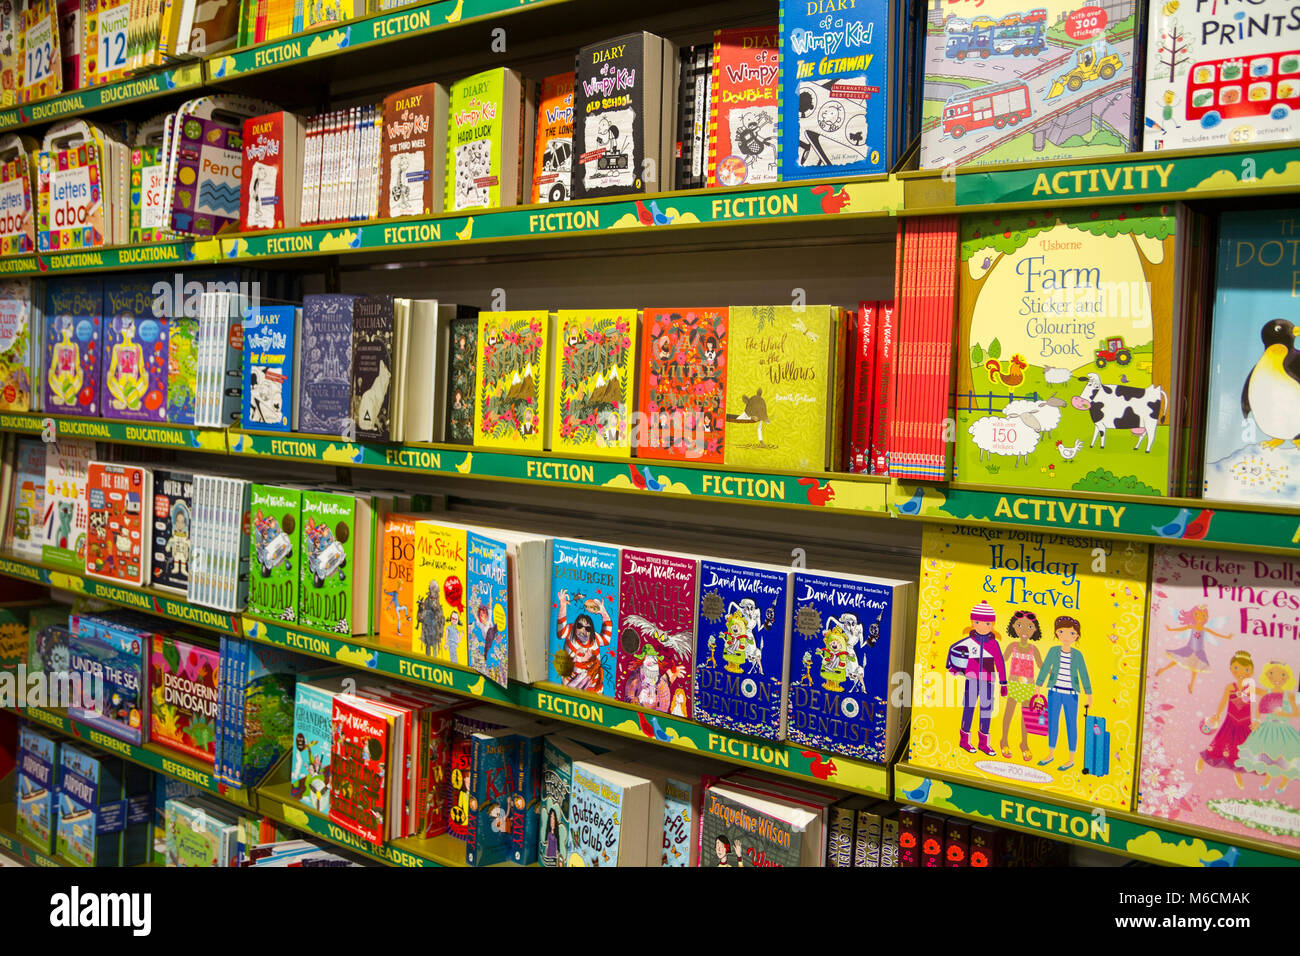 Kinderbücher, Kinderbuch, Kinderbuchhandlung, Buchhandlung, UK Bücherregale Anzeige von Büchern Bildung Wissen Lernen Lernkonzept Stockfoto